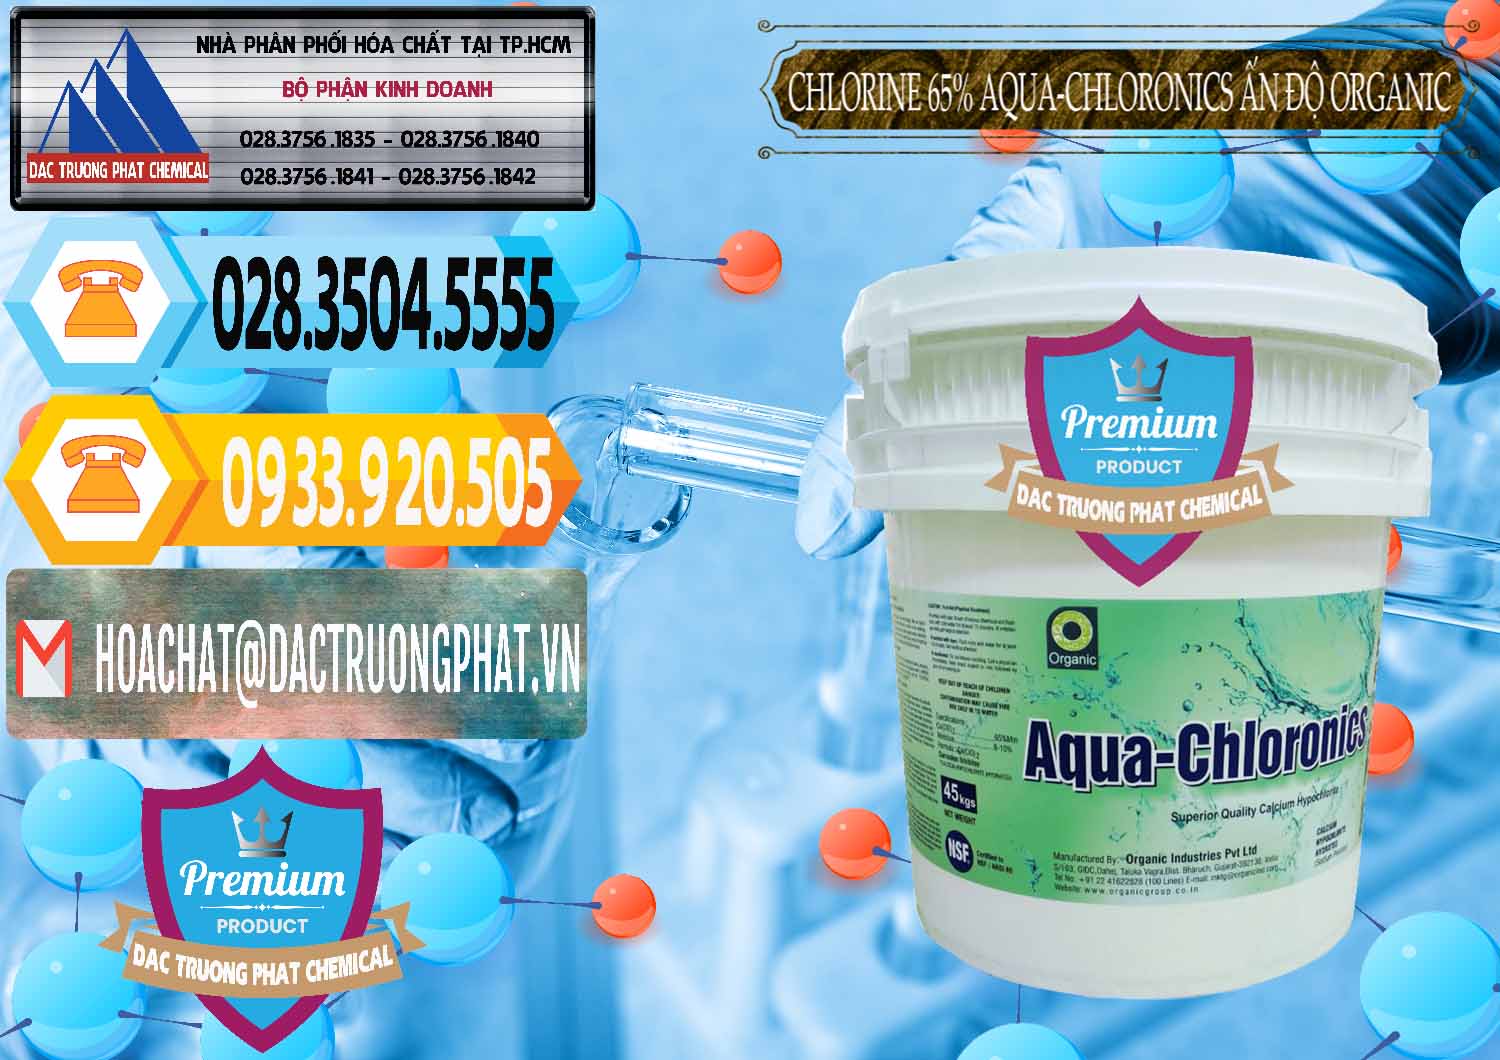 Chuyên cung ứng & bán Chlorine – Clorin 65% Aqua-Chloronics Ấn Độ Organic India - 0210 - Cty cung cấp ( phân phối ) hóa chất tại TP.HCM - hoachattayrua.net